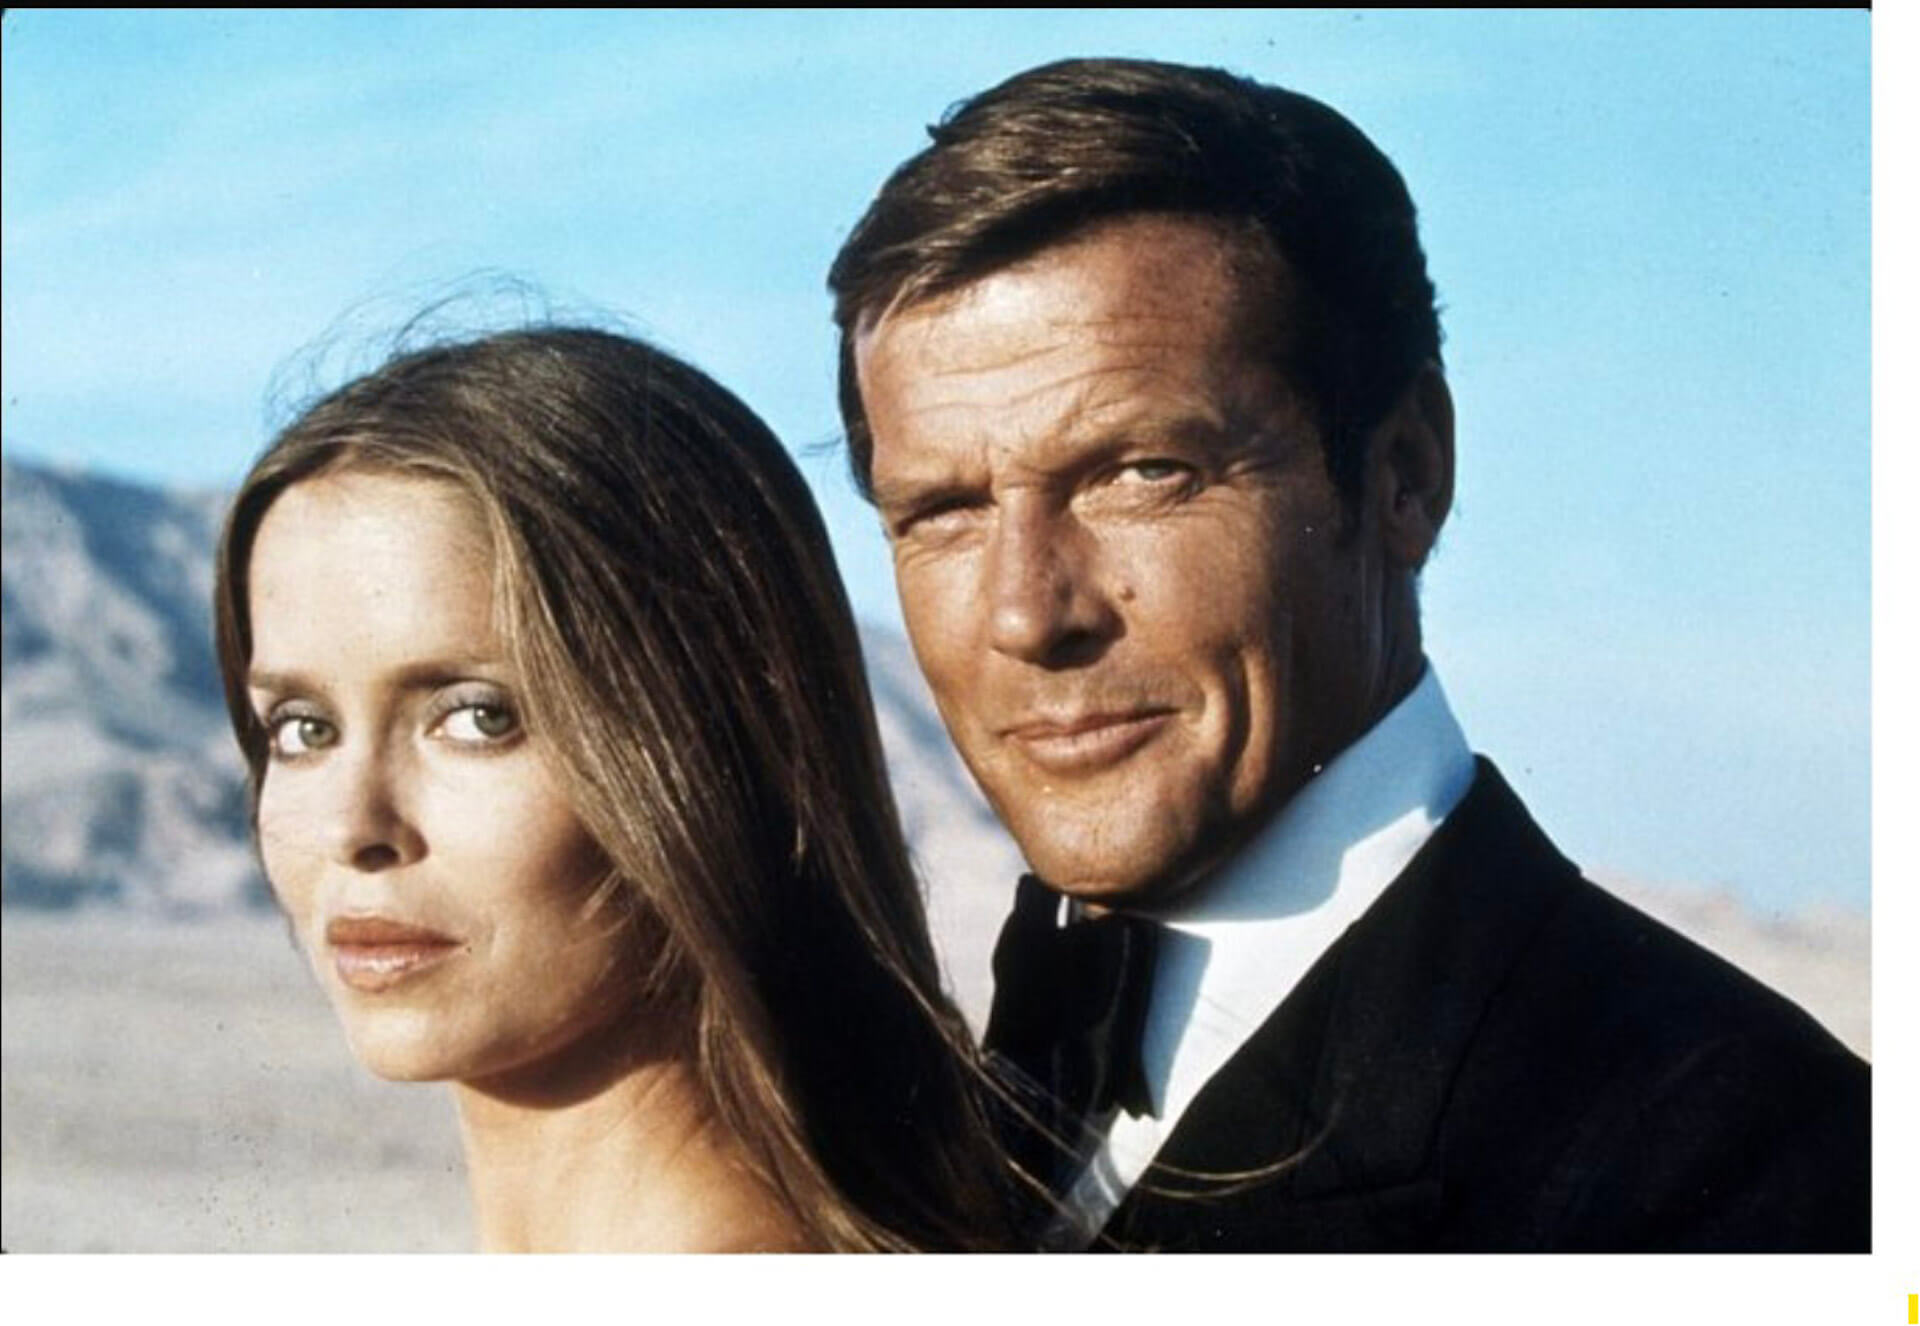 James Bond in Egypt